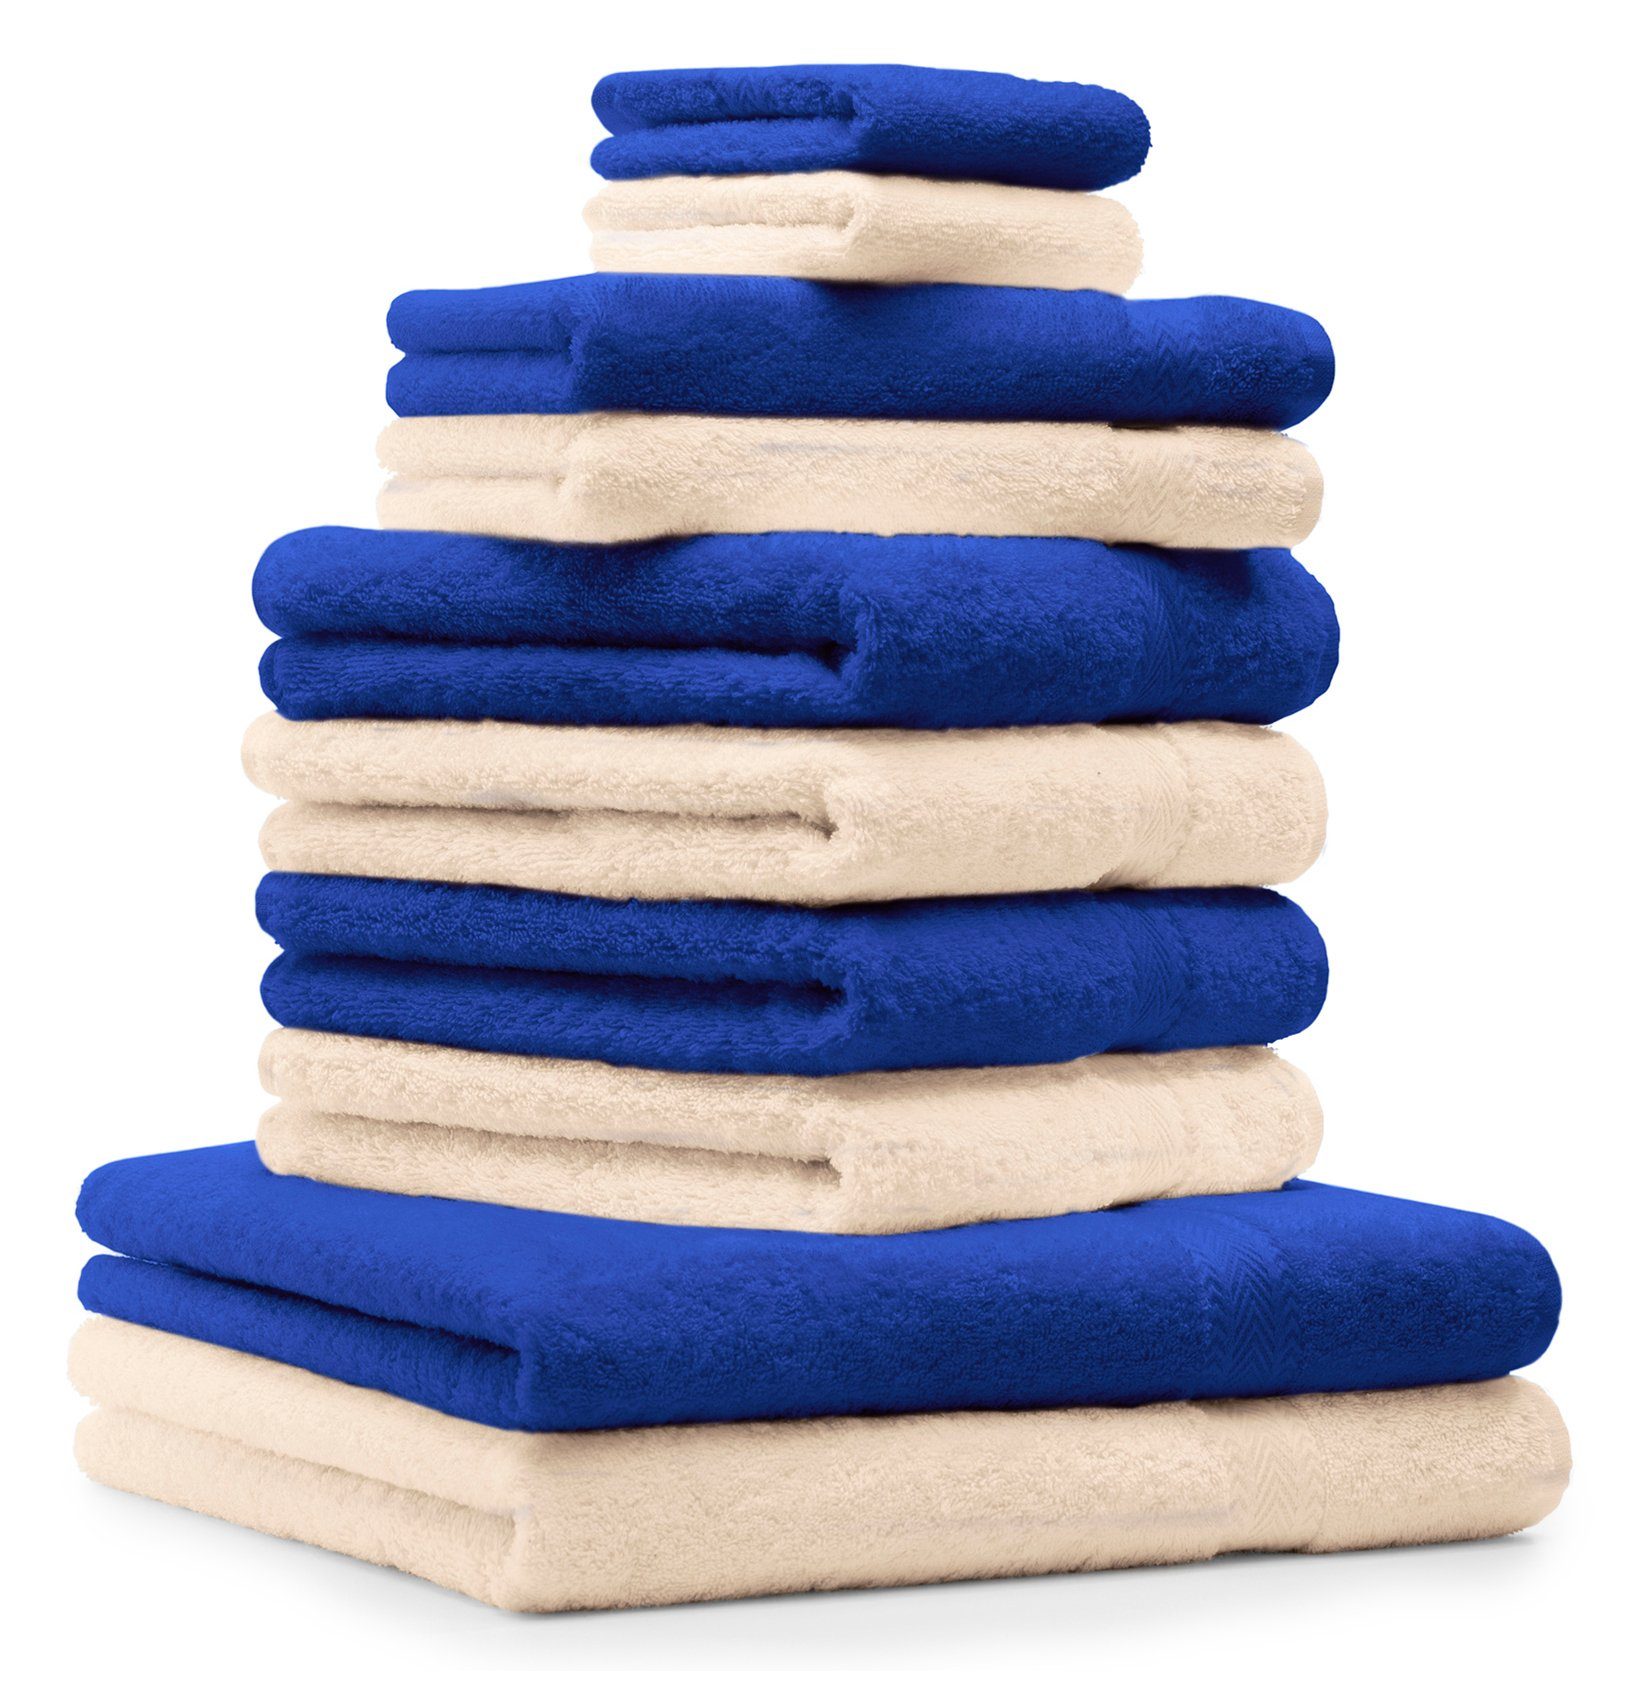 Betz Handtuch Set 10-TLG. Baumwolle Handtuch-Set royalblau Baumwolle Farbe CLASSIC beige, 100% und 100